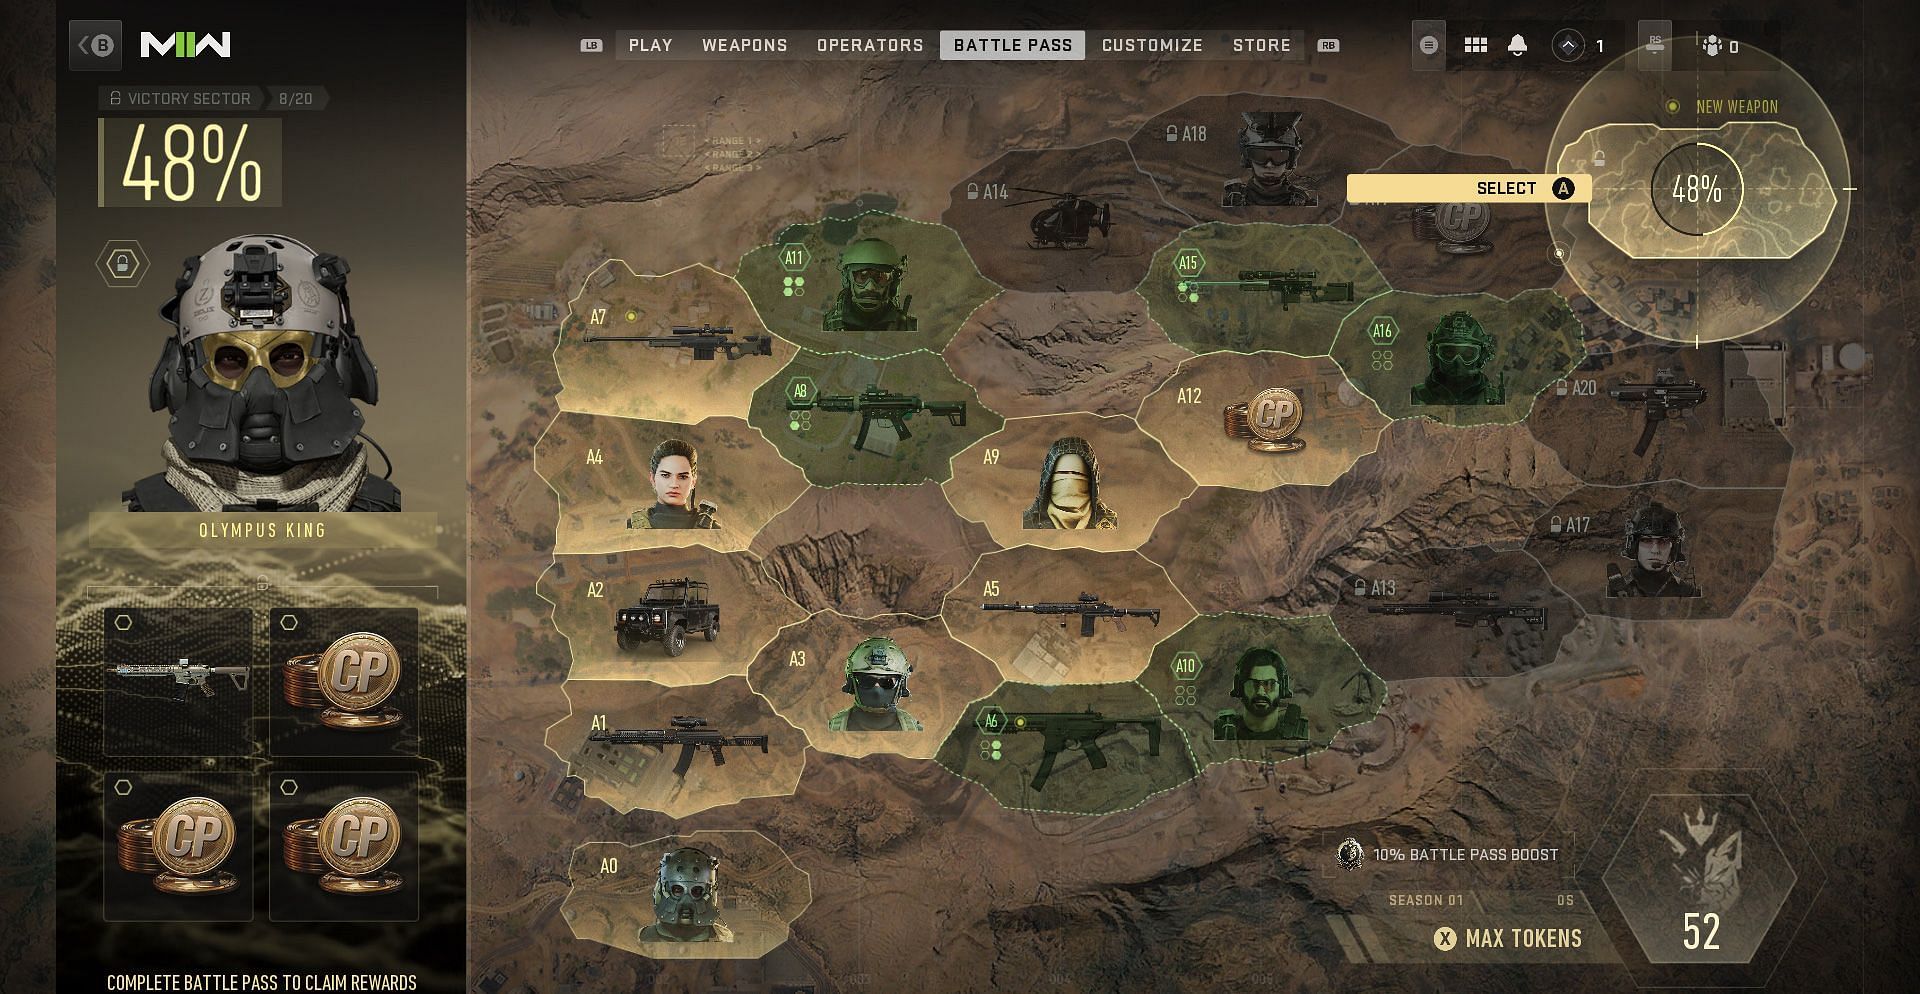 Compre experiencias de batalla en Modern Warfare 2 y Warzone 2 (Imagen a través de Activision)